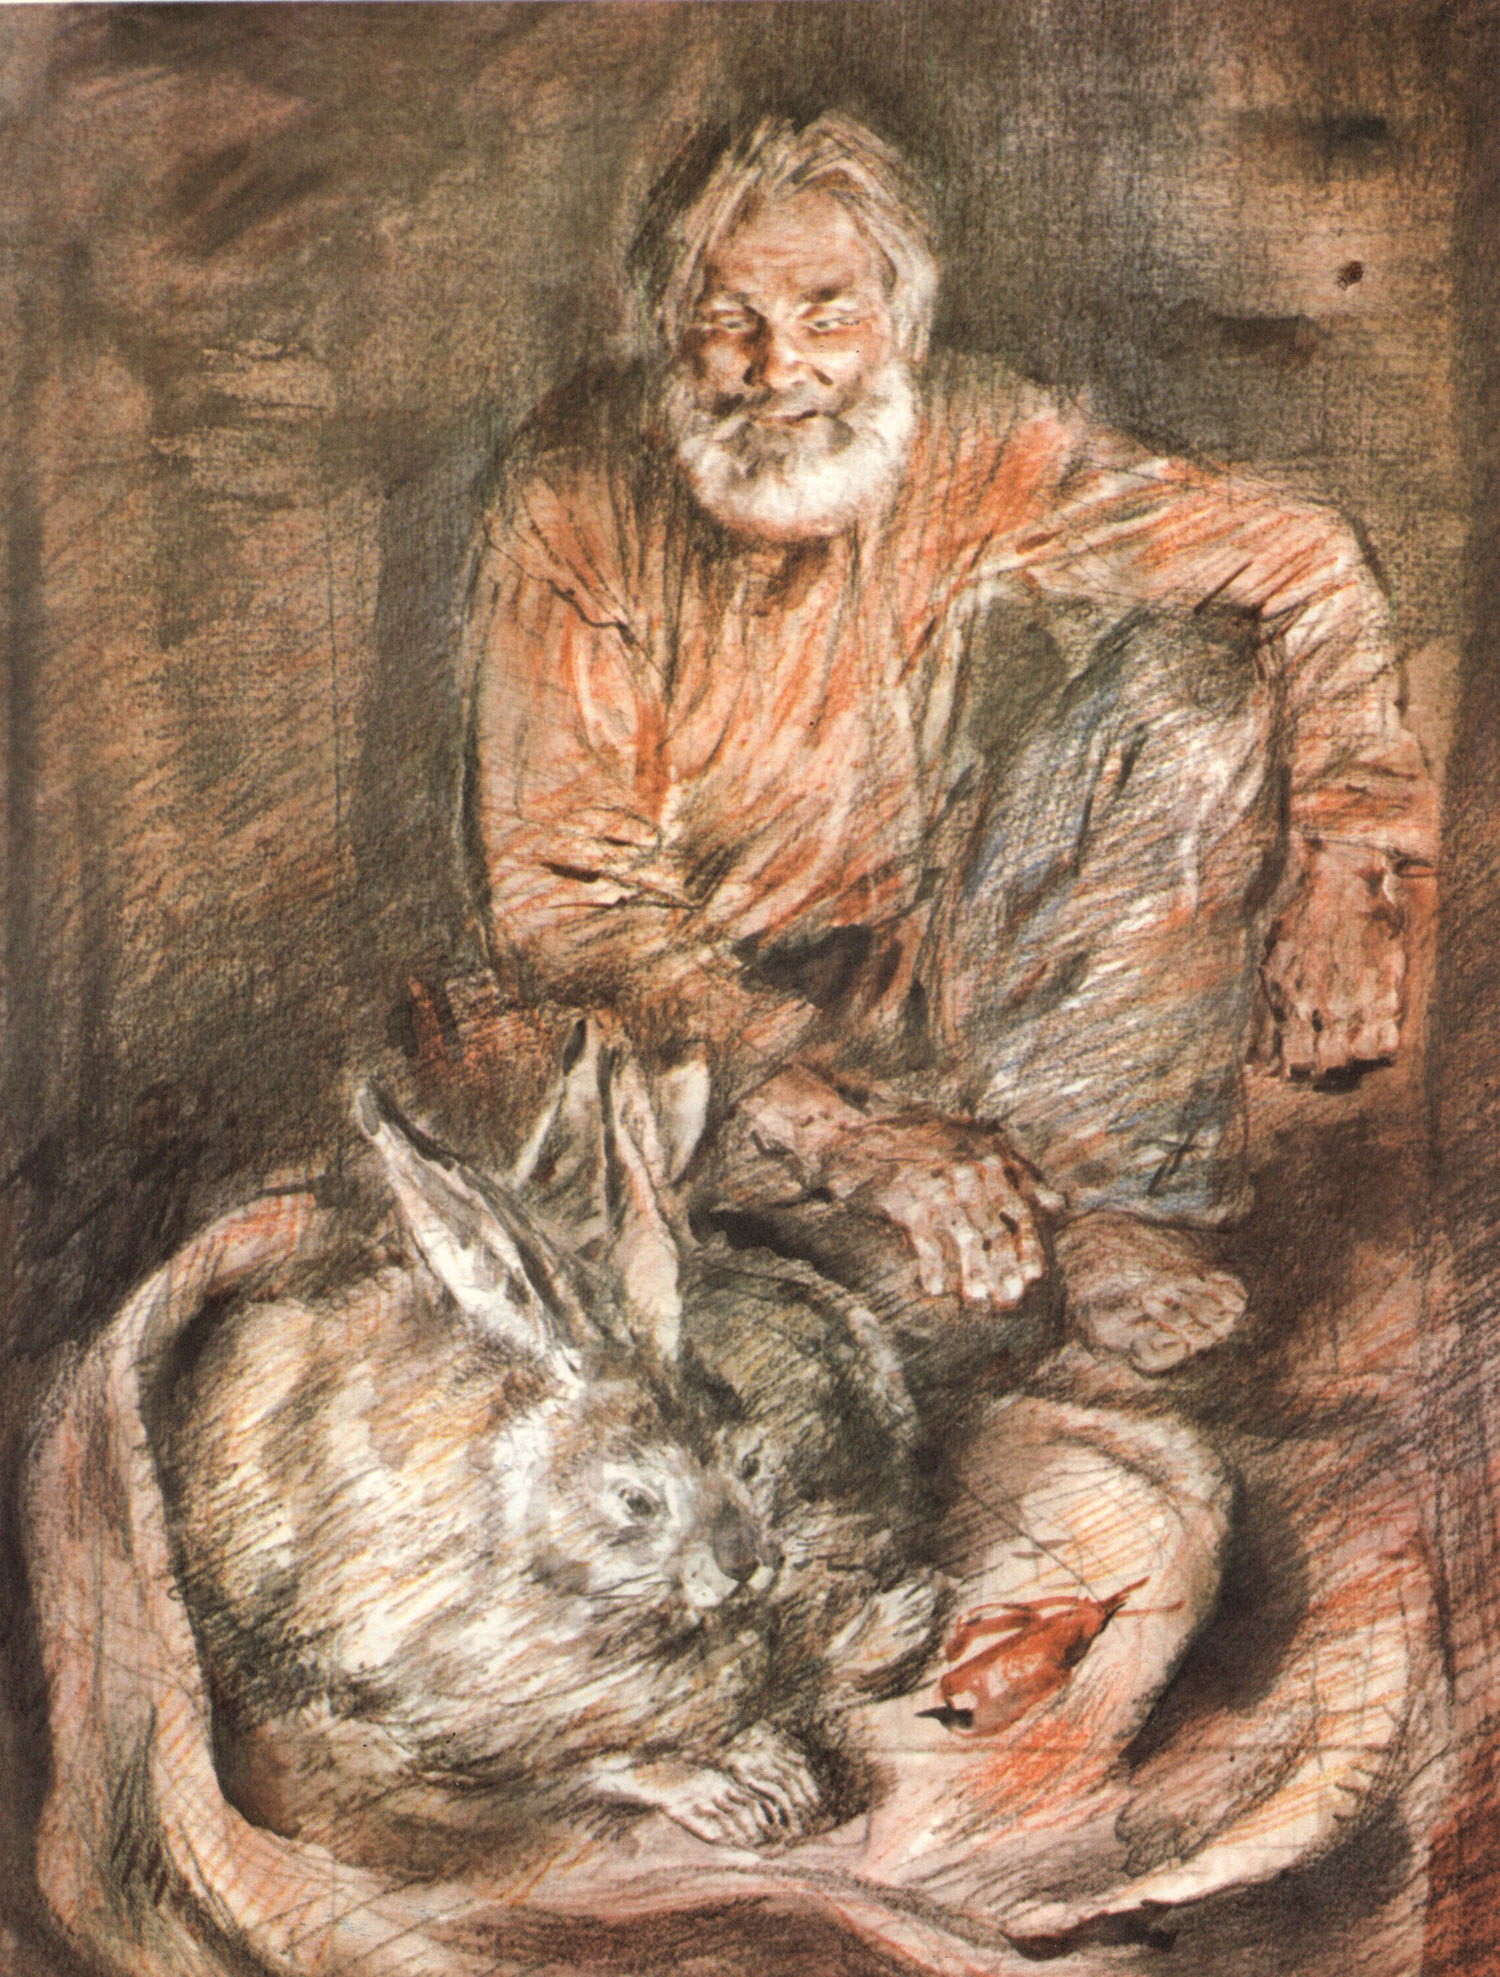 Н. Некрасов. "Дедушка Мазай и зайцы". Иллюстрации В. Бескаравайного.